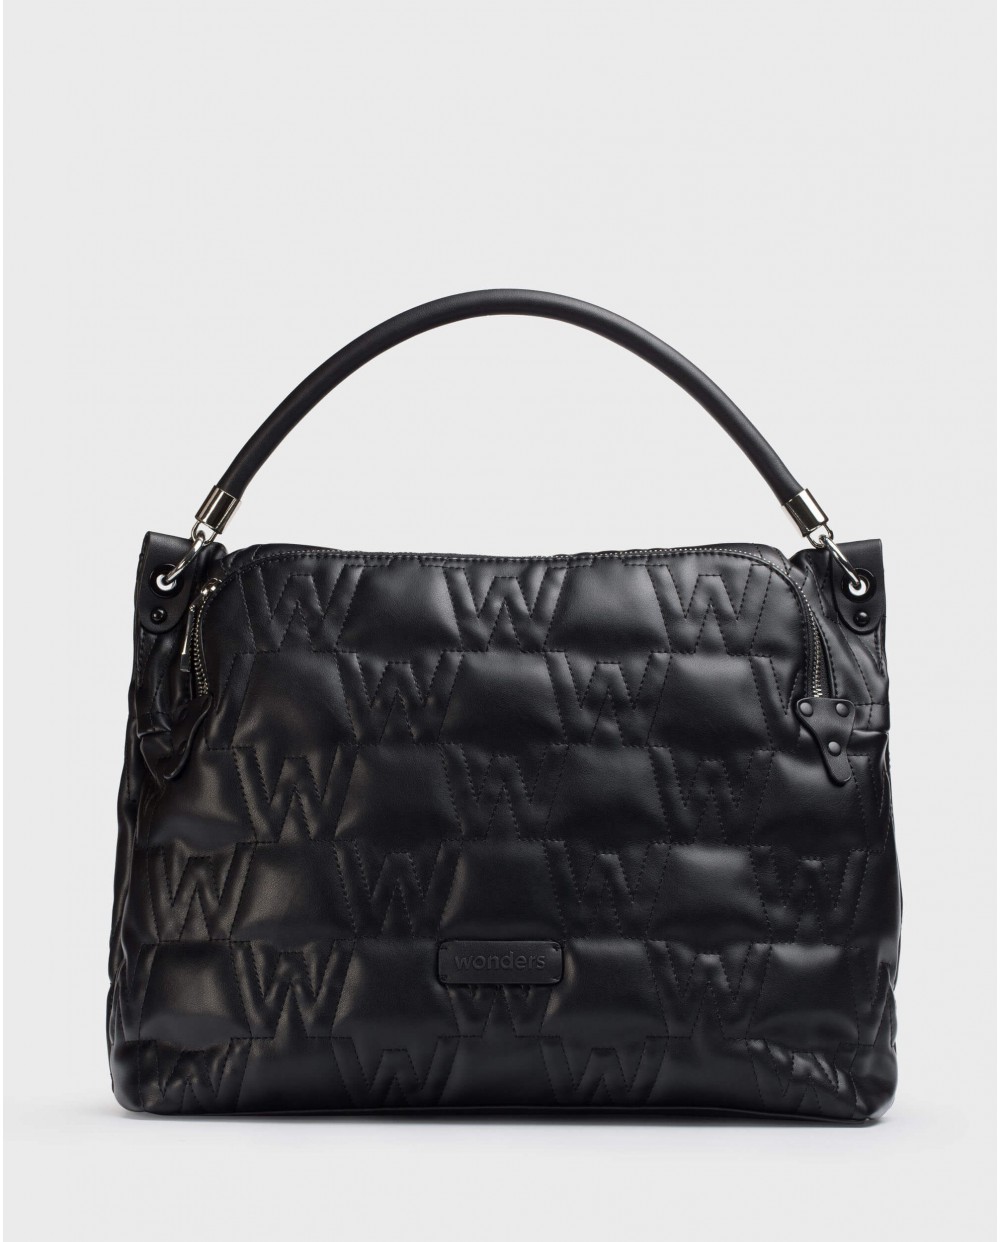 Wonders-Pre-Spring-Black Charlotte Bag